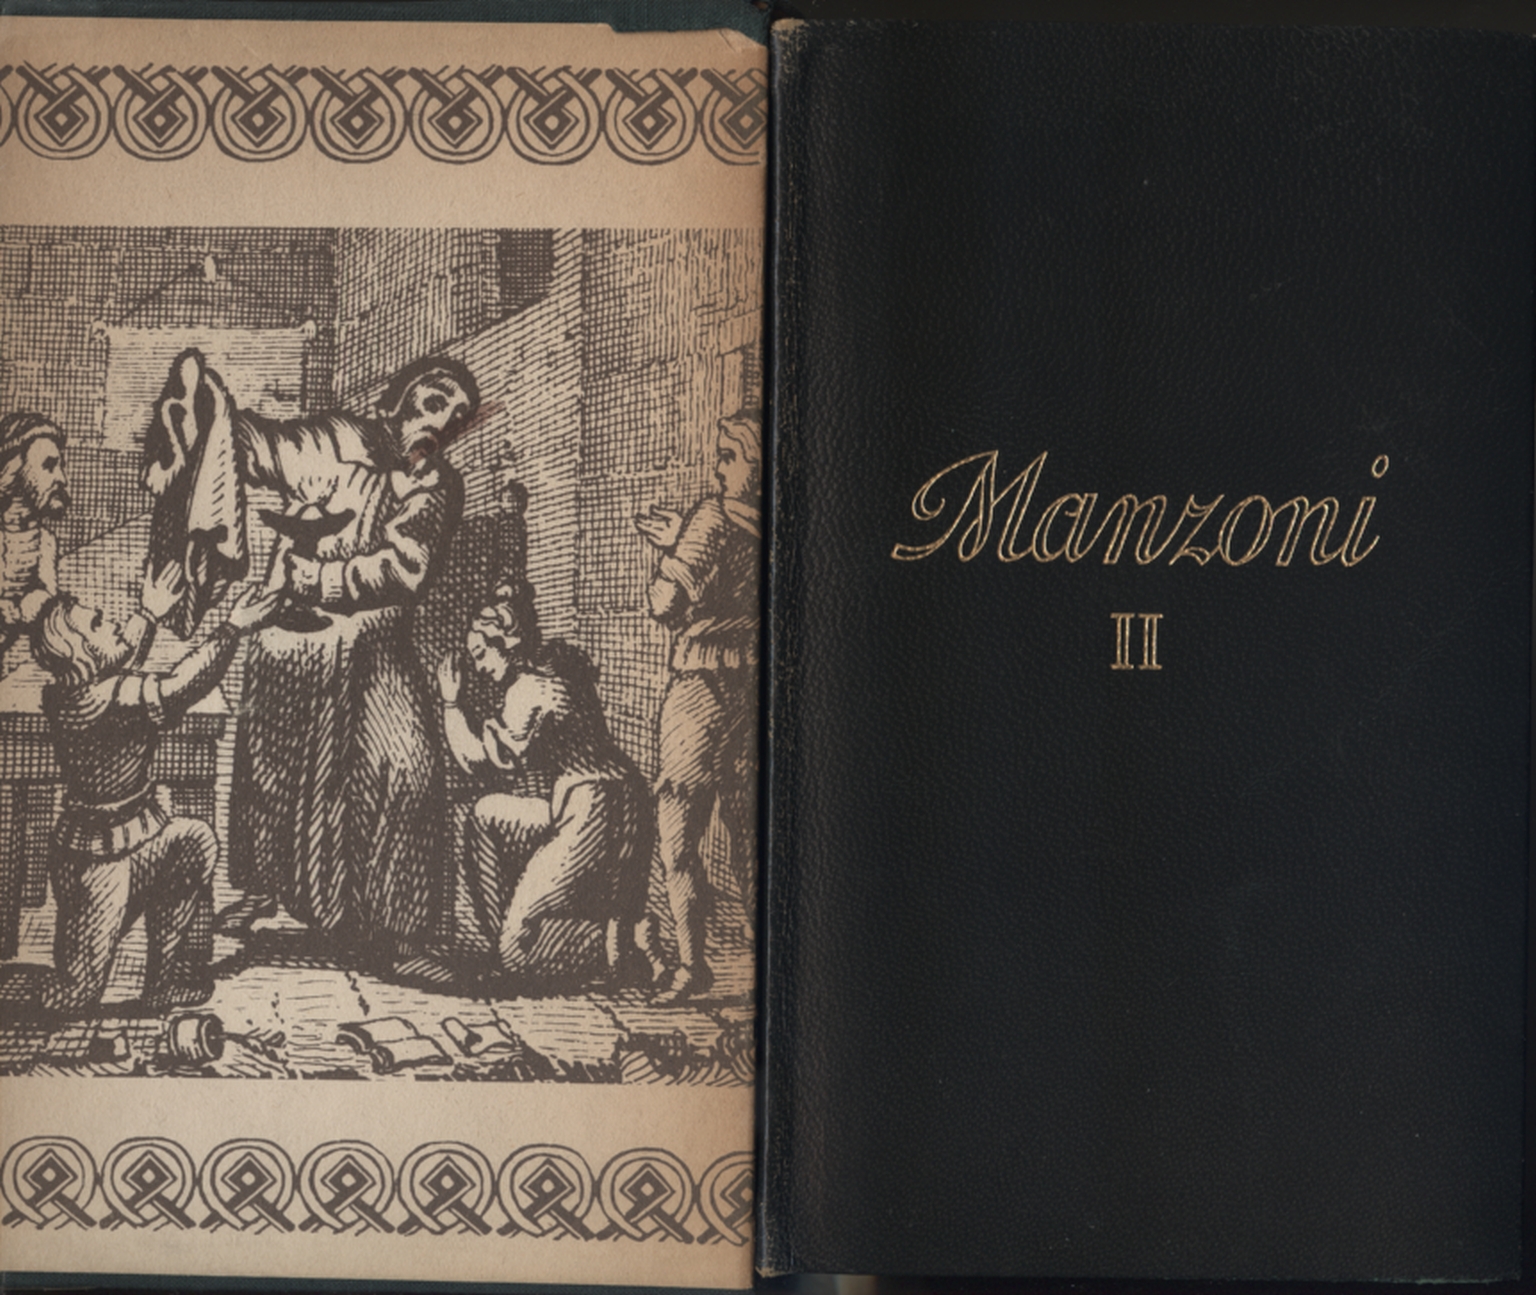 Alle werke von Alessandro Manzoni second Volume, Alessandro Manzoni